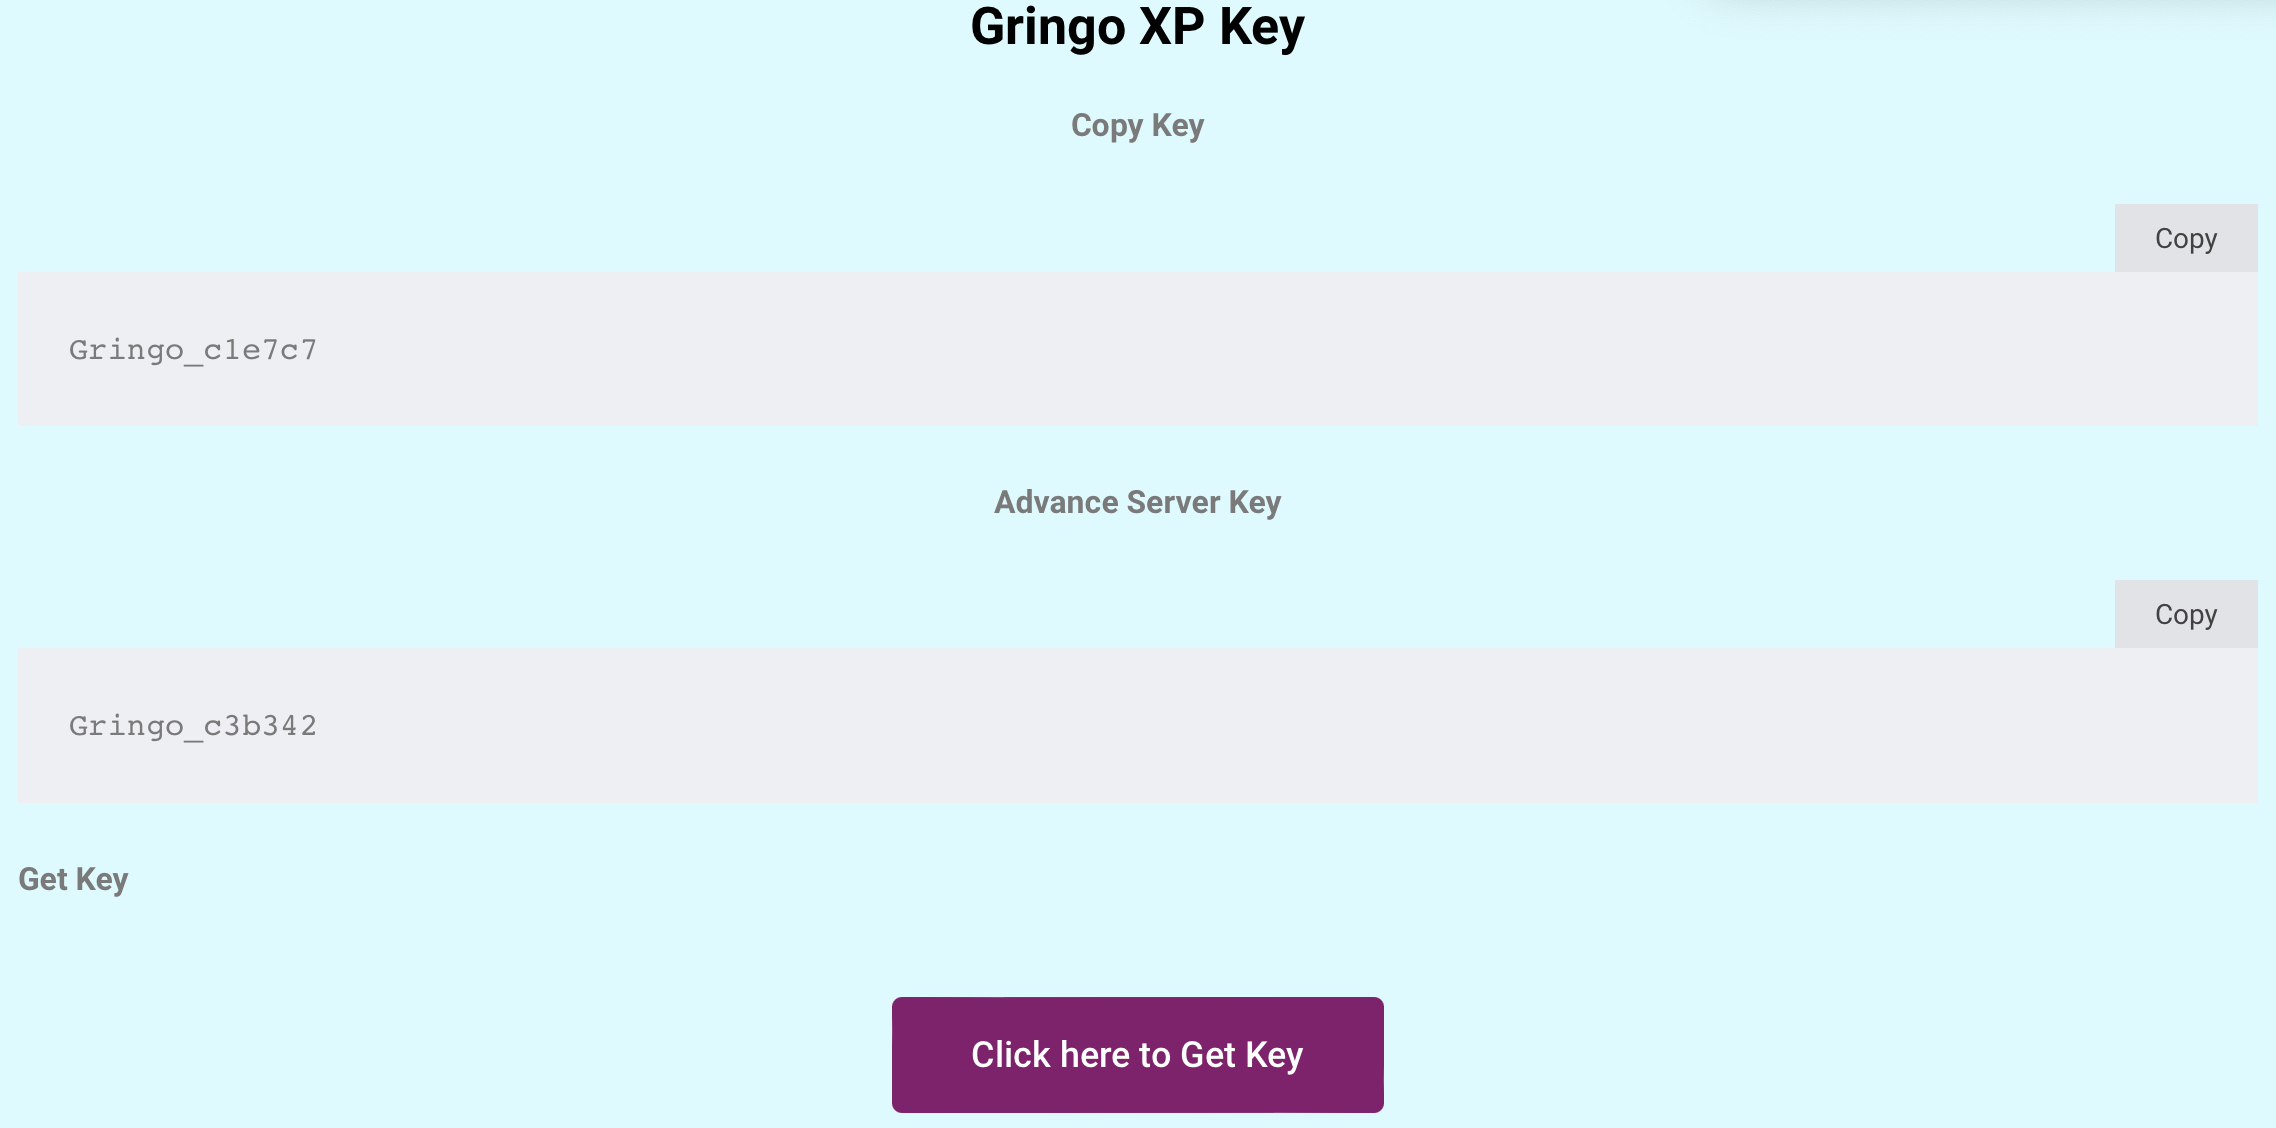 Gringo Xp Key